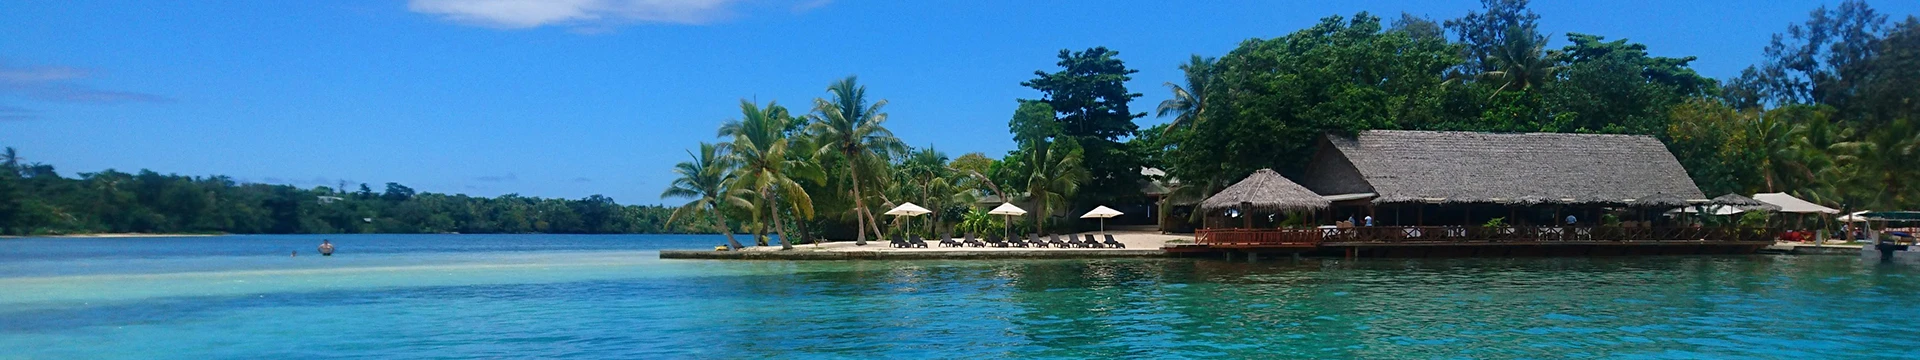 Hotels in Vanuatu